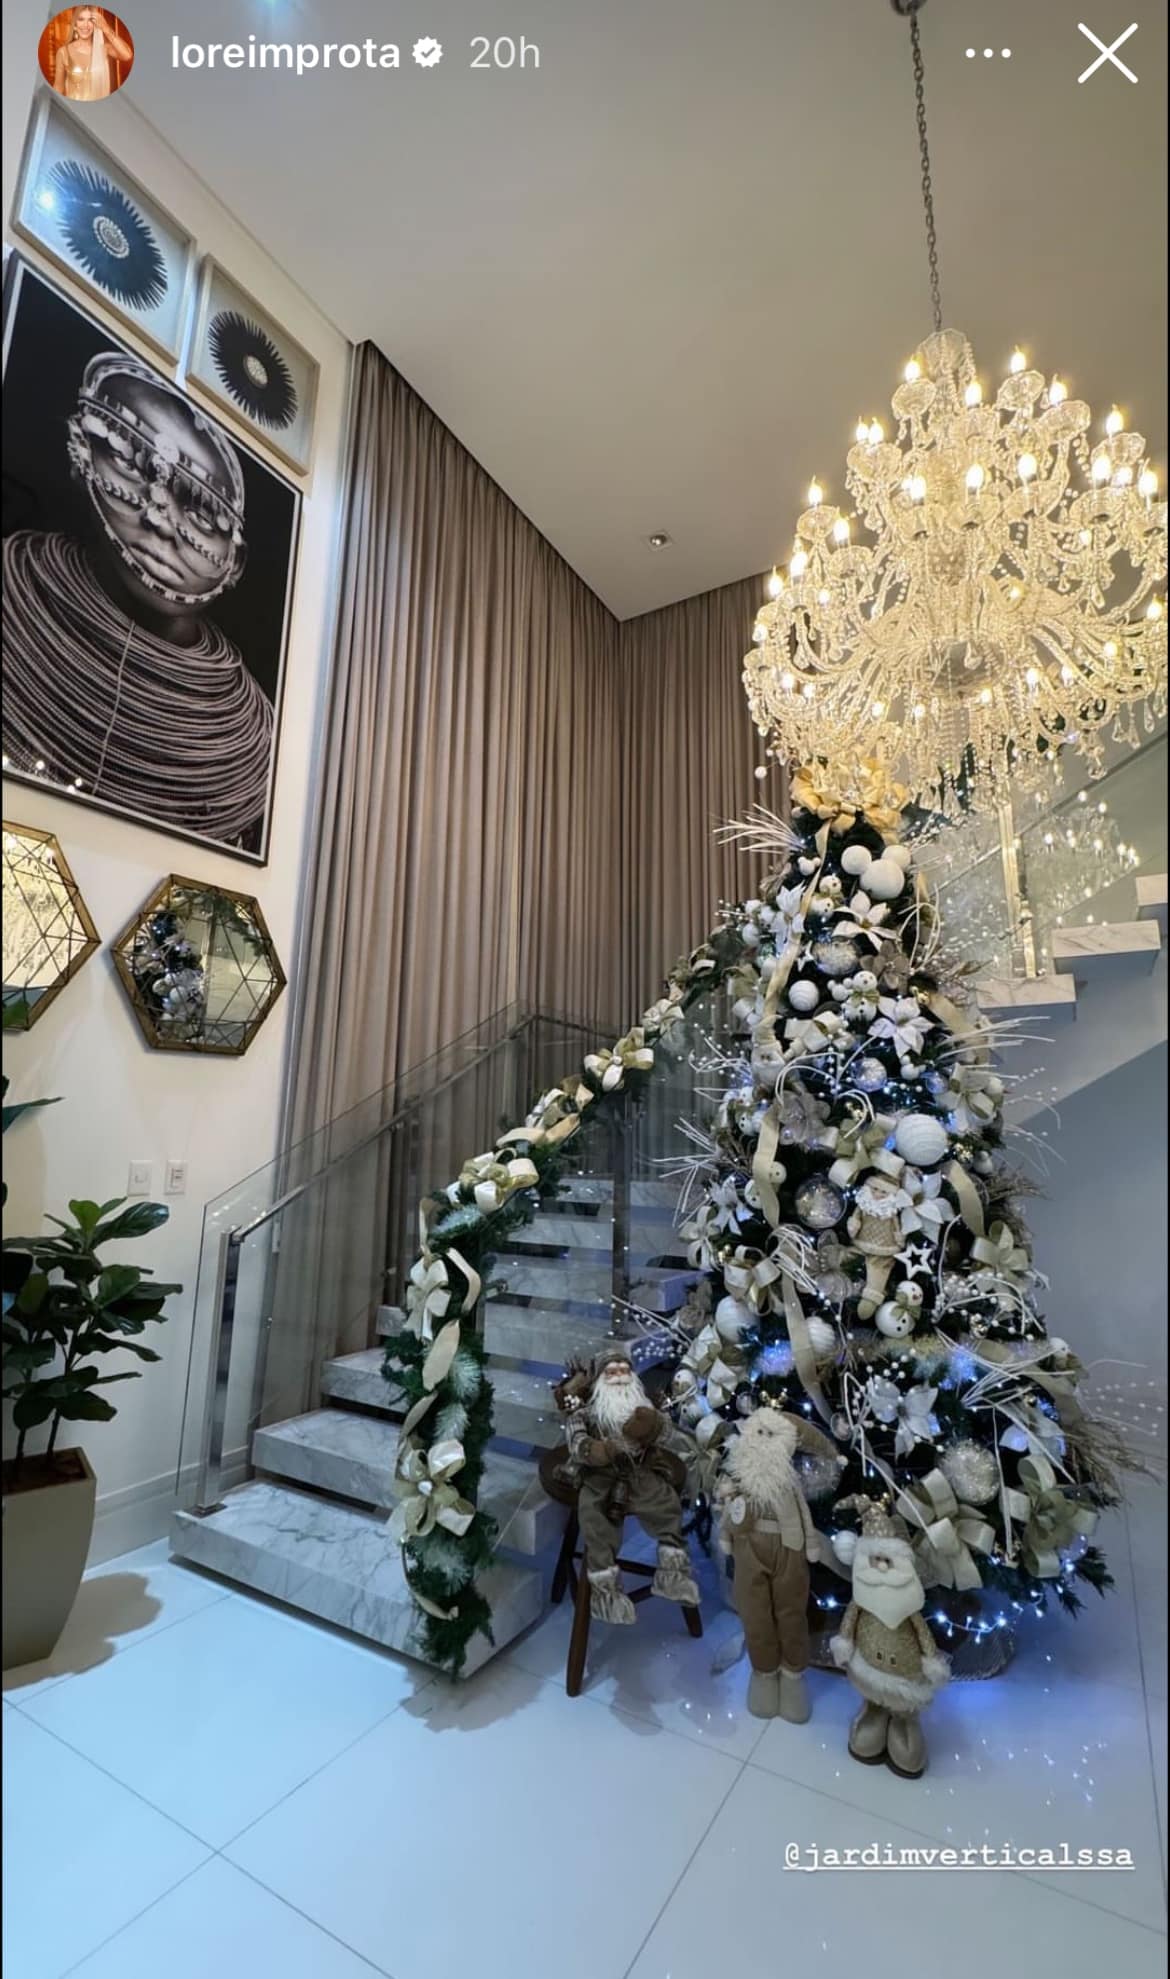 Lore Improta mostra de decoração de Natal da mansão com Léo Santa a 